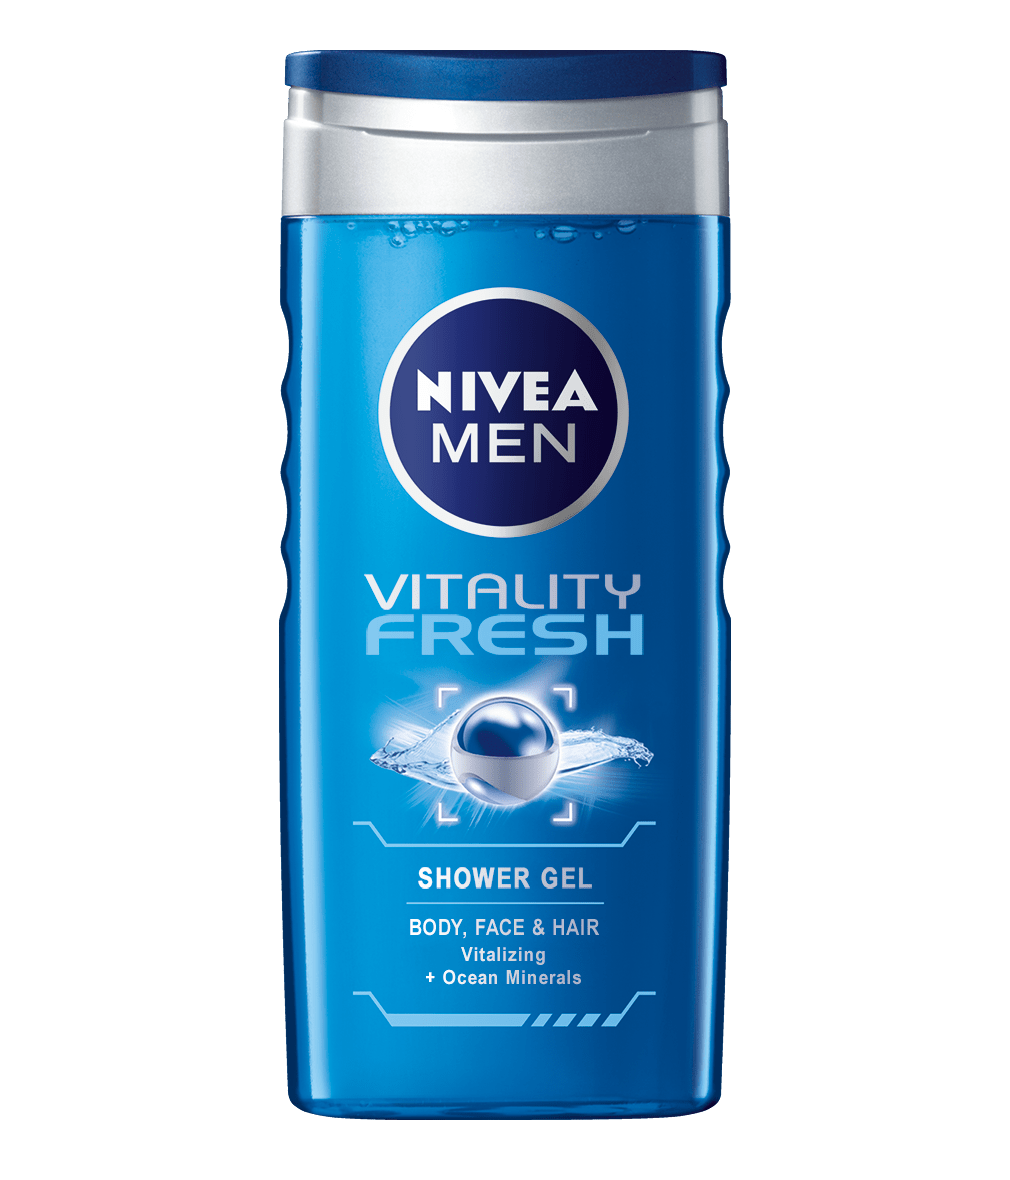 Nivea Men Vitality Fresh Shower Gel For Body Face & Hair